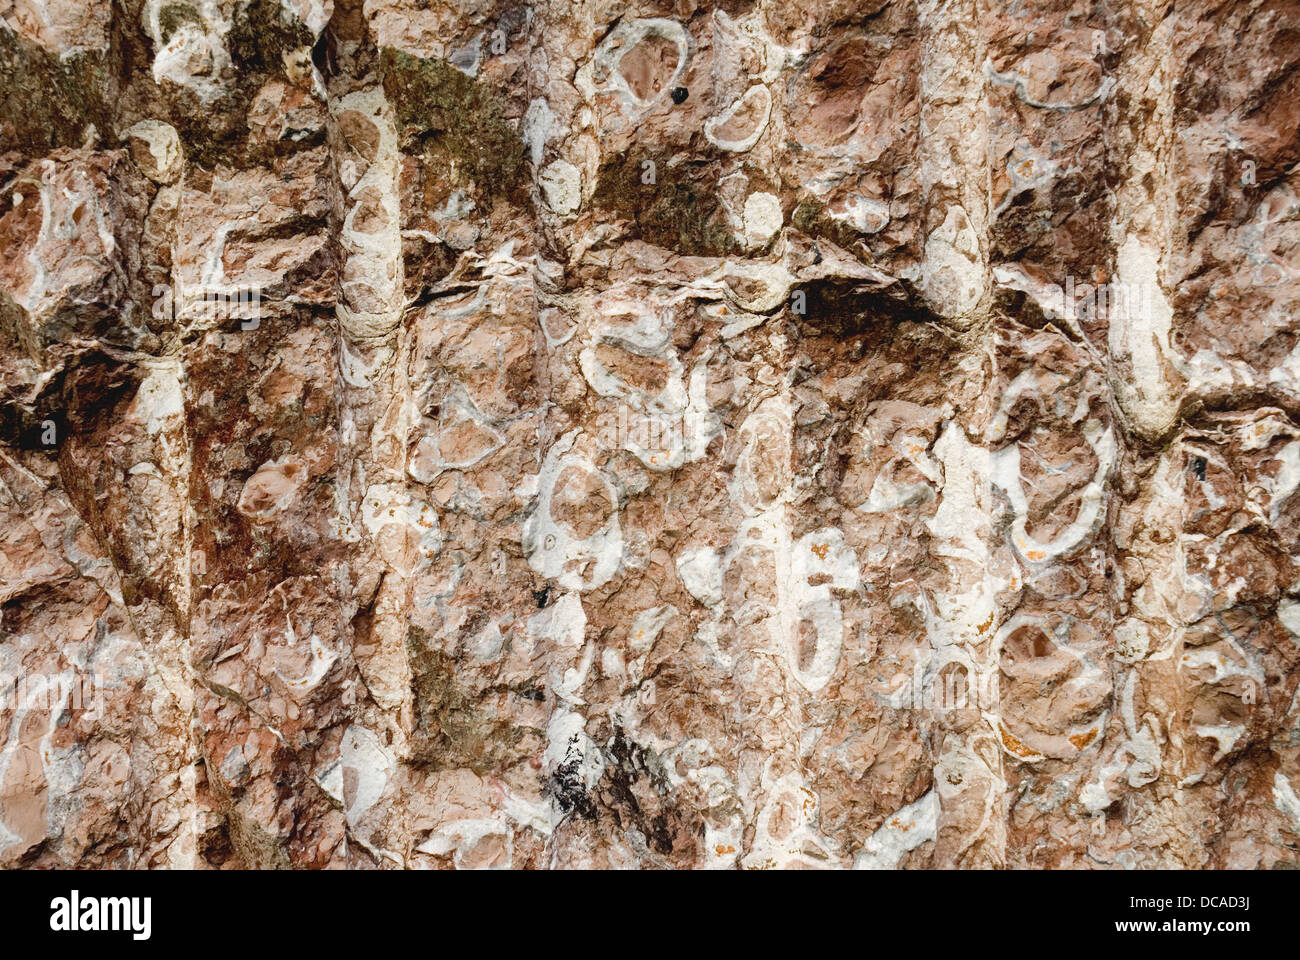 Fossile Mollusken im Riff Kalkstein (´Rojo de Ereño´ Kalkstein). Ereño, Biskaya, Baskenland, Spanien Stockfoto